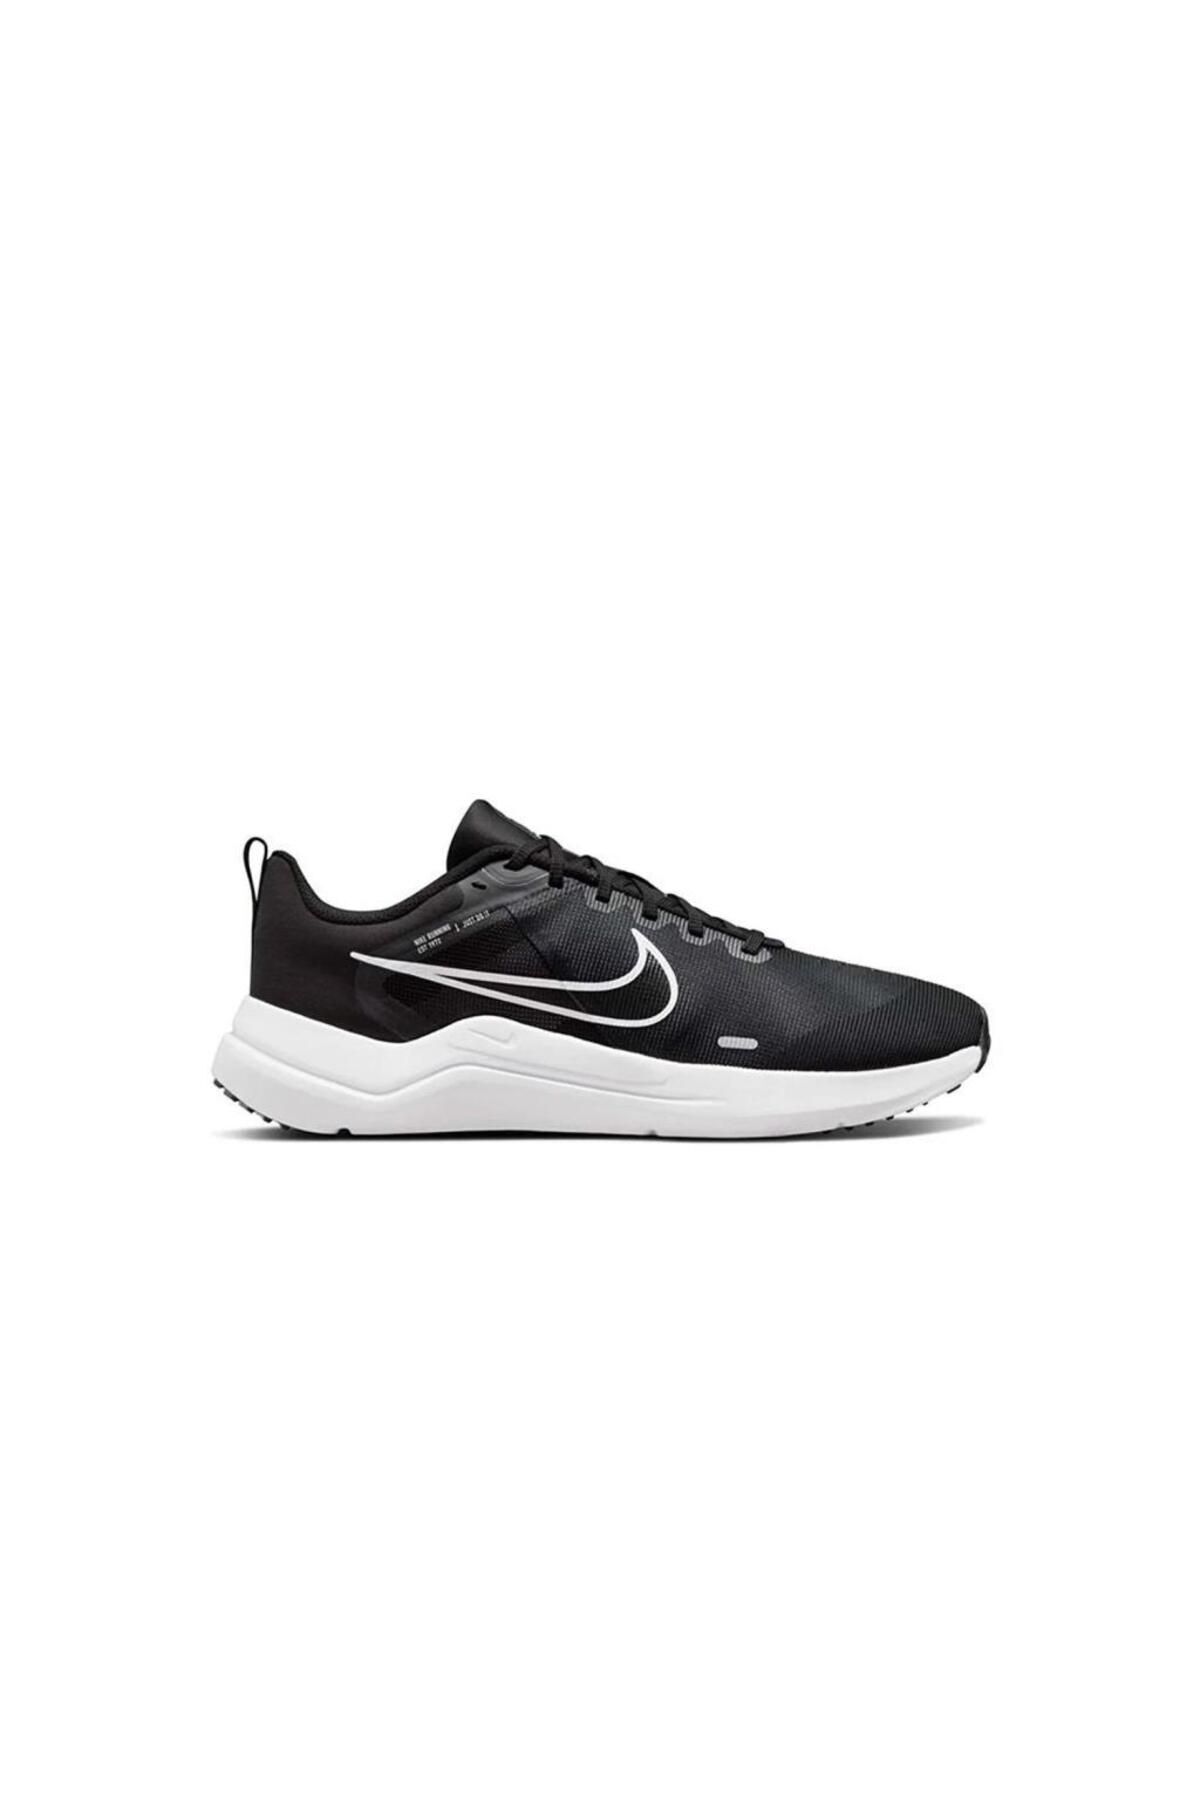 Nike Downshifter 12 Erkek Siyah Koşu Ayakkabısı Dd9293-001